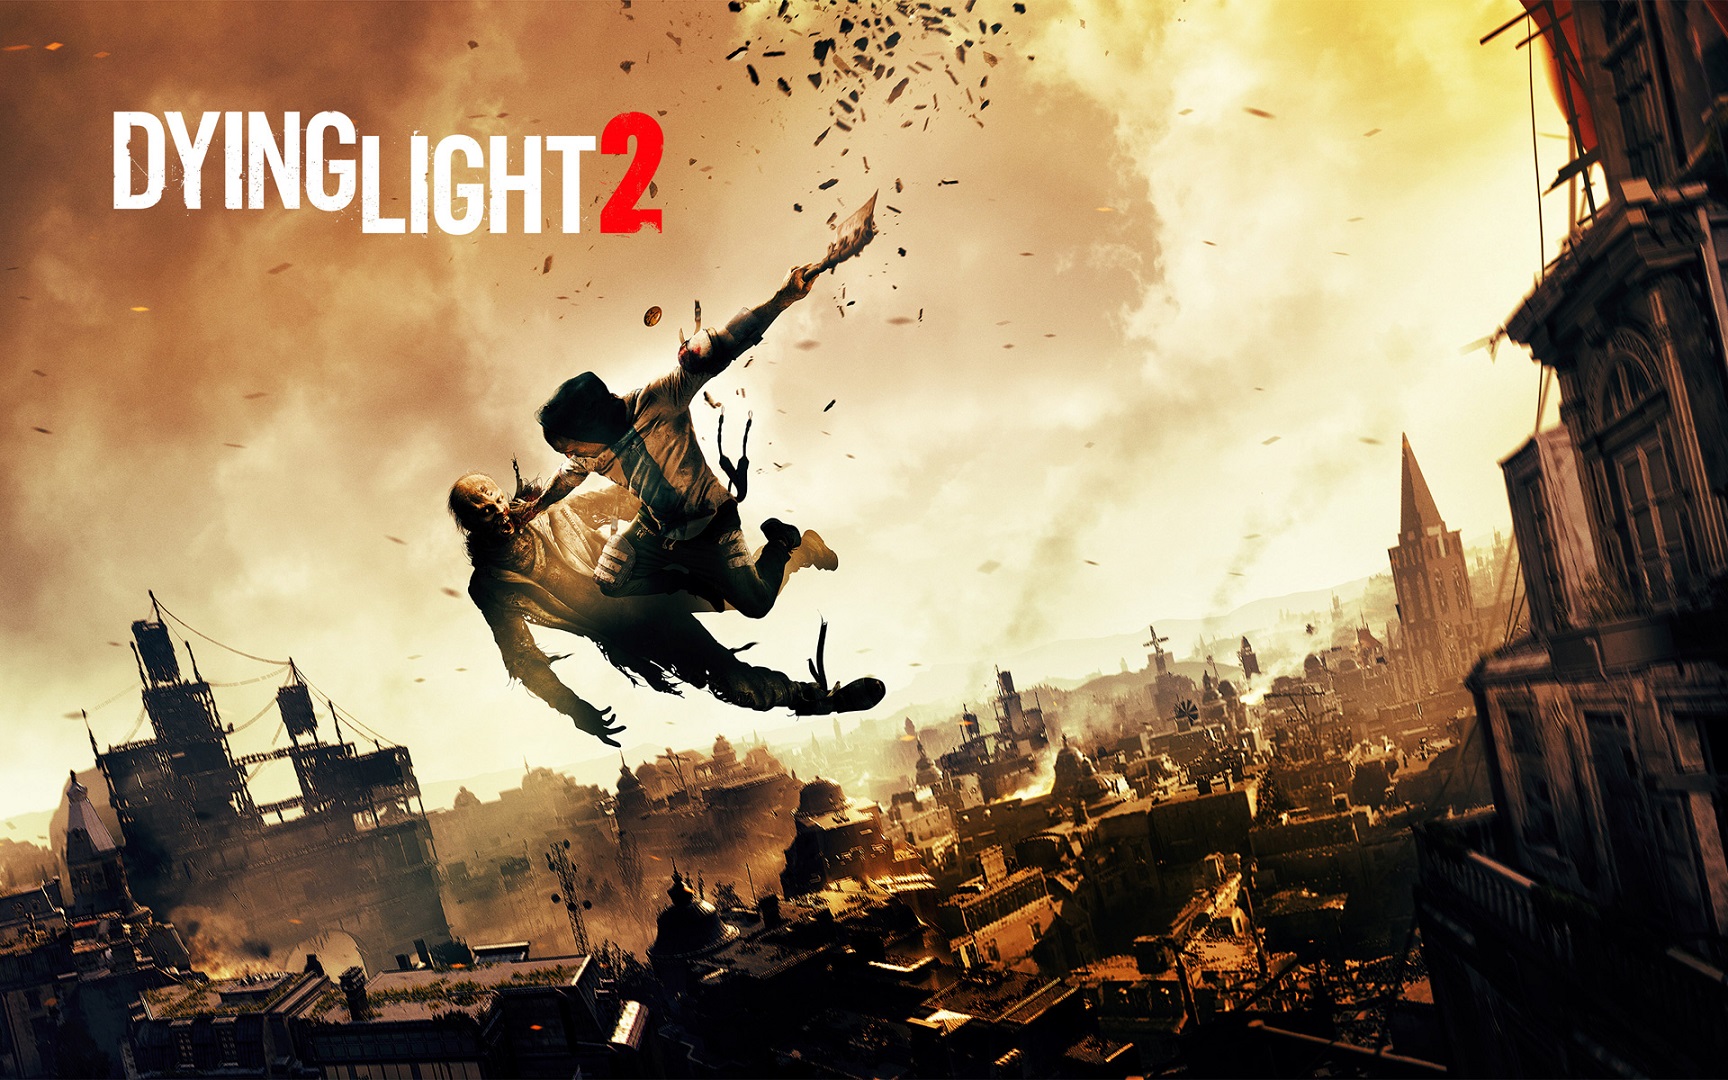 В сети появилось изображение коллекционного издания Dying Light 2. Неужели игру все-таки выпустят?